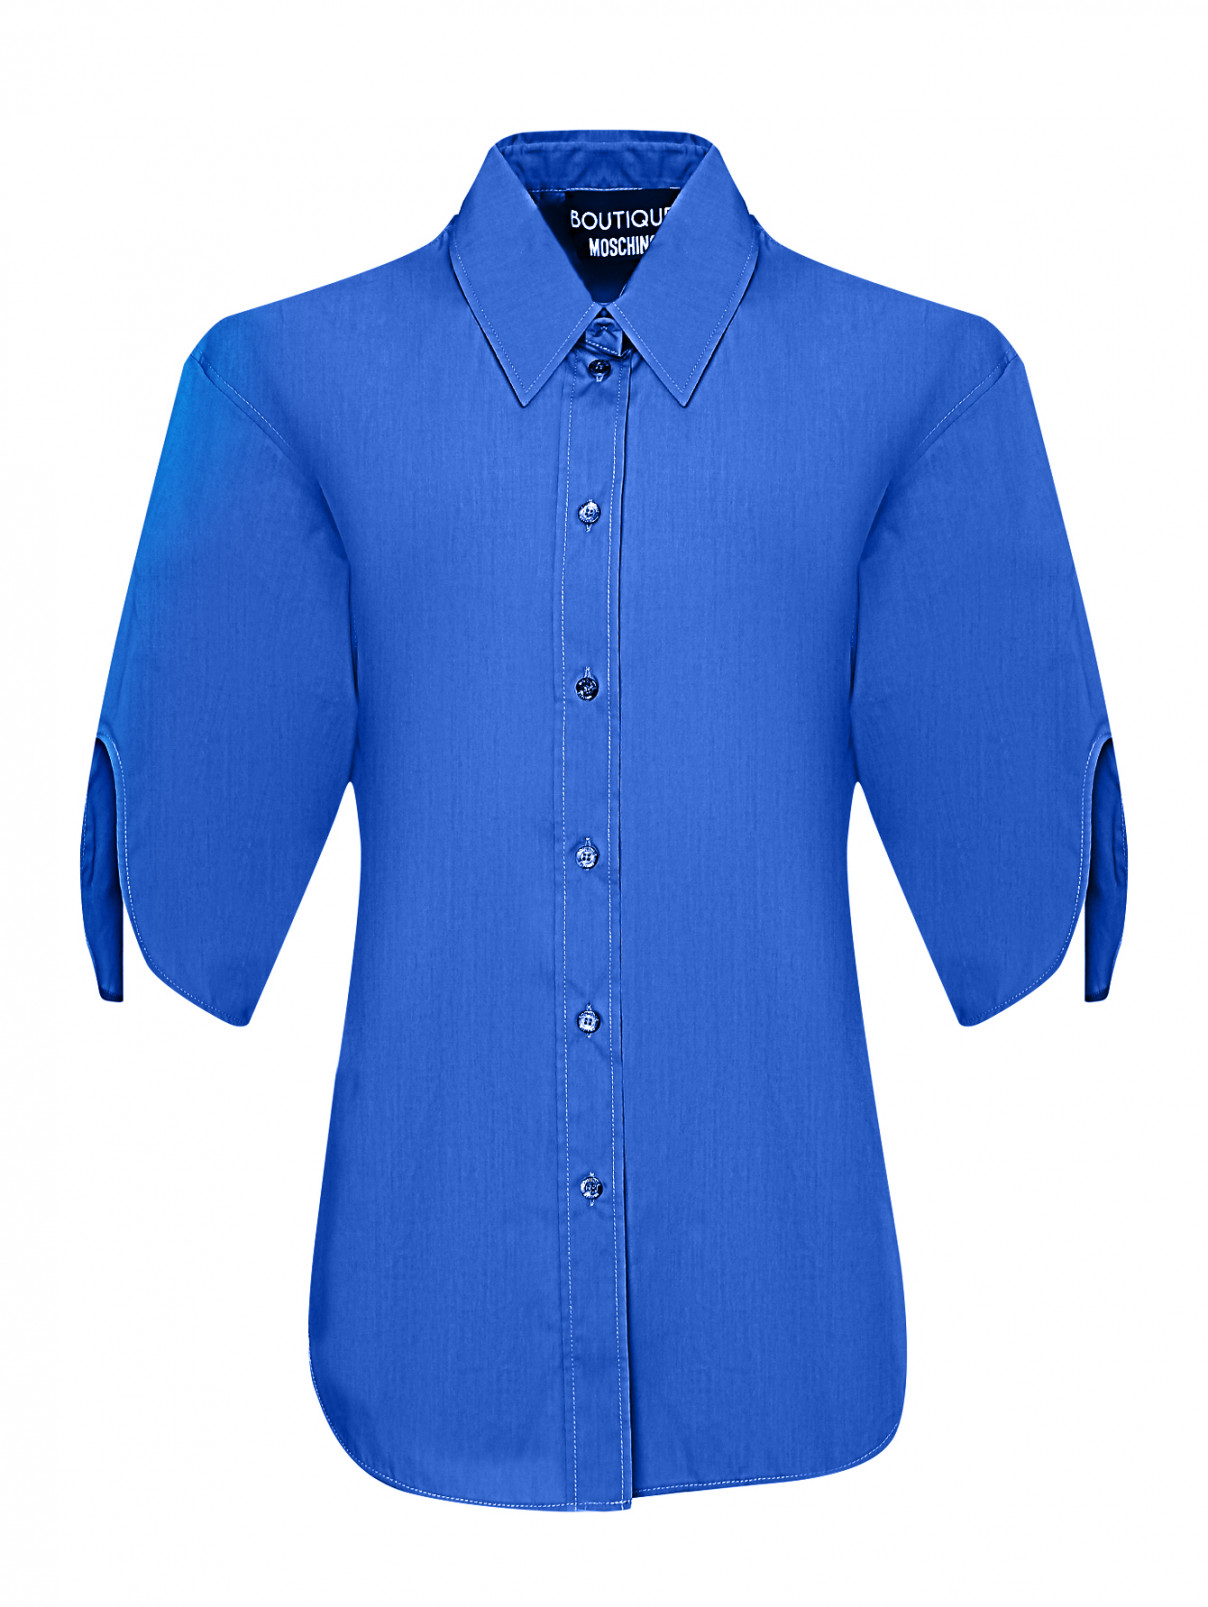 Блуза из хлопка с вырезами на рукавах Moschino Boutique  –  Общий вид  – Цвет:  Синий